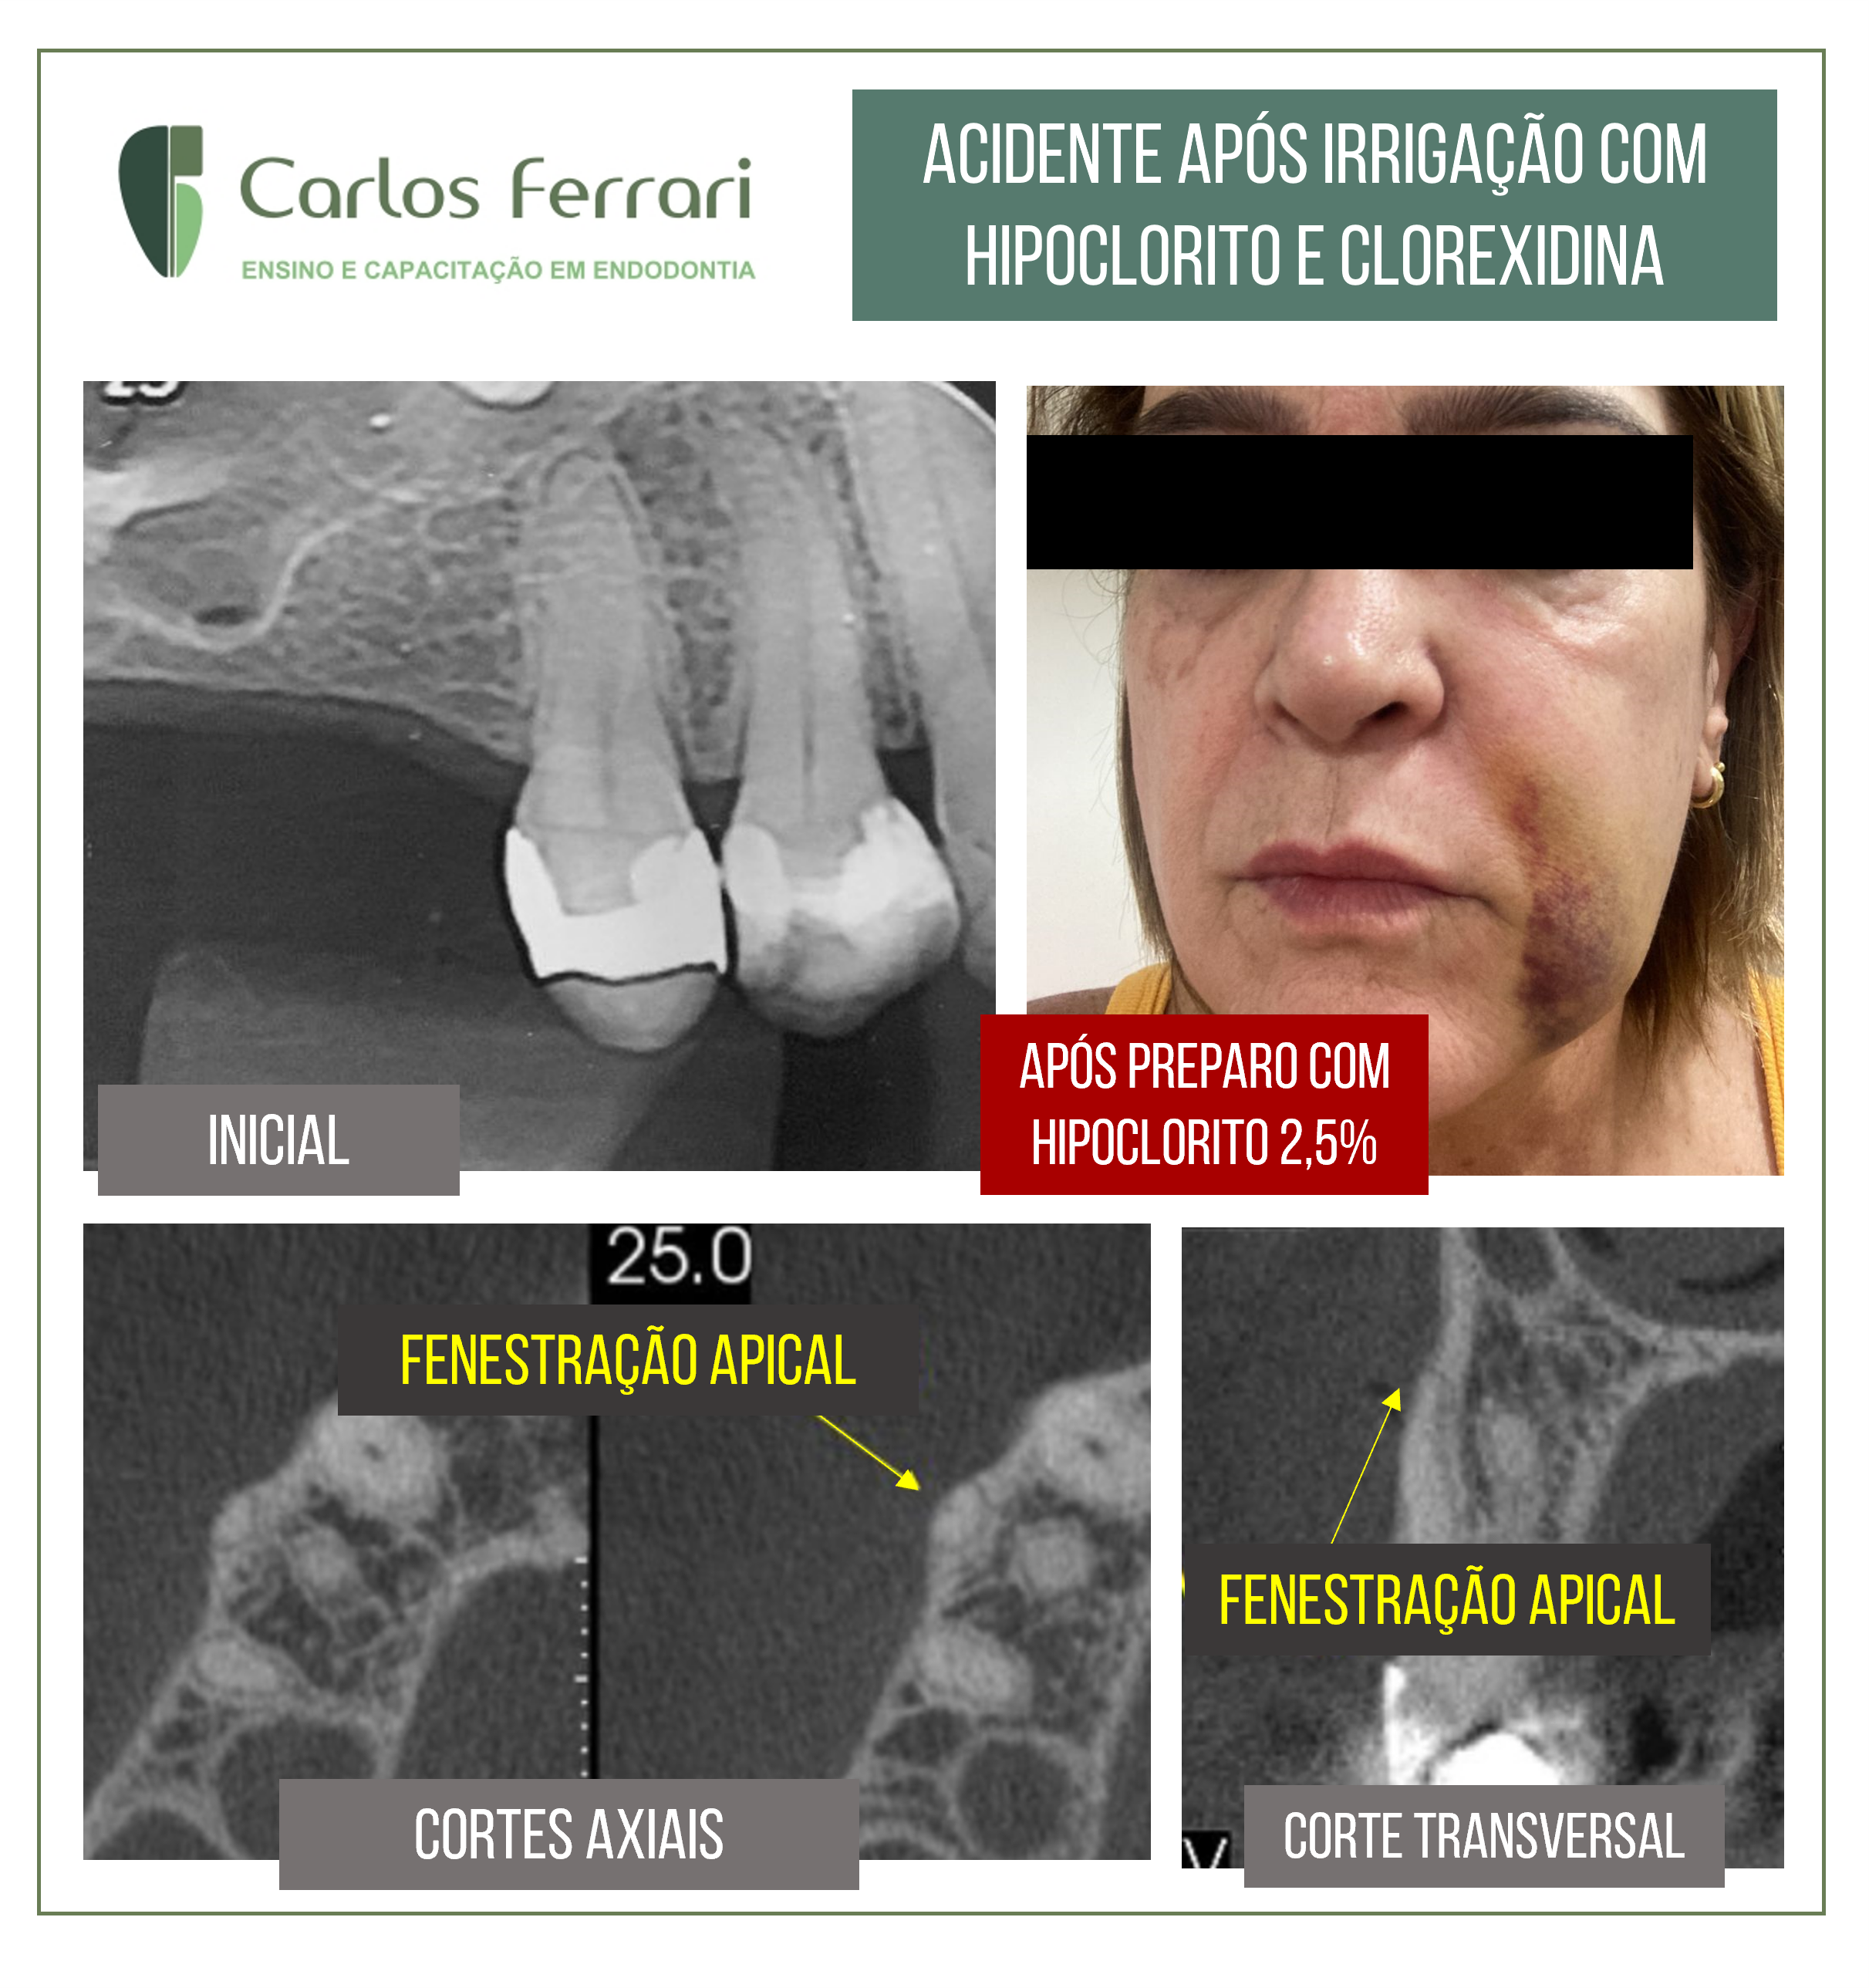 You are currently viewing Irrigação na endodontia. Acidente com hipoclorito e clorexidina.